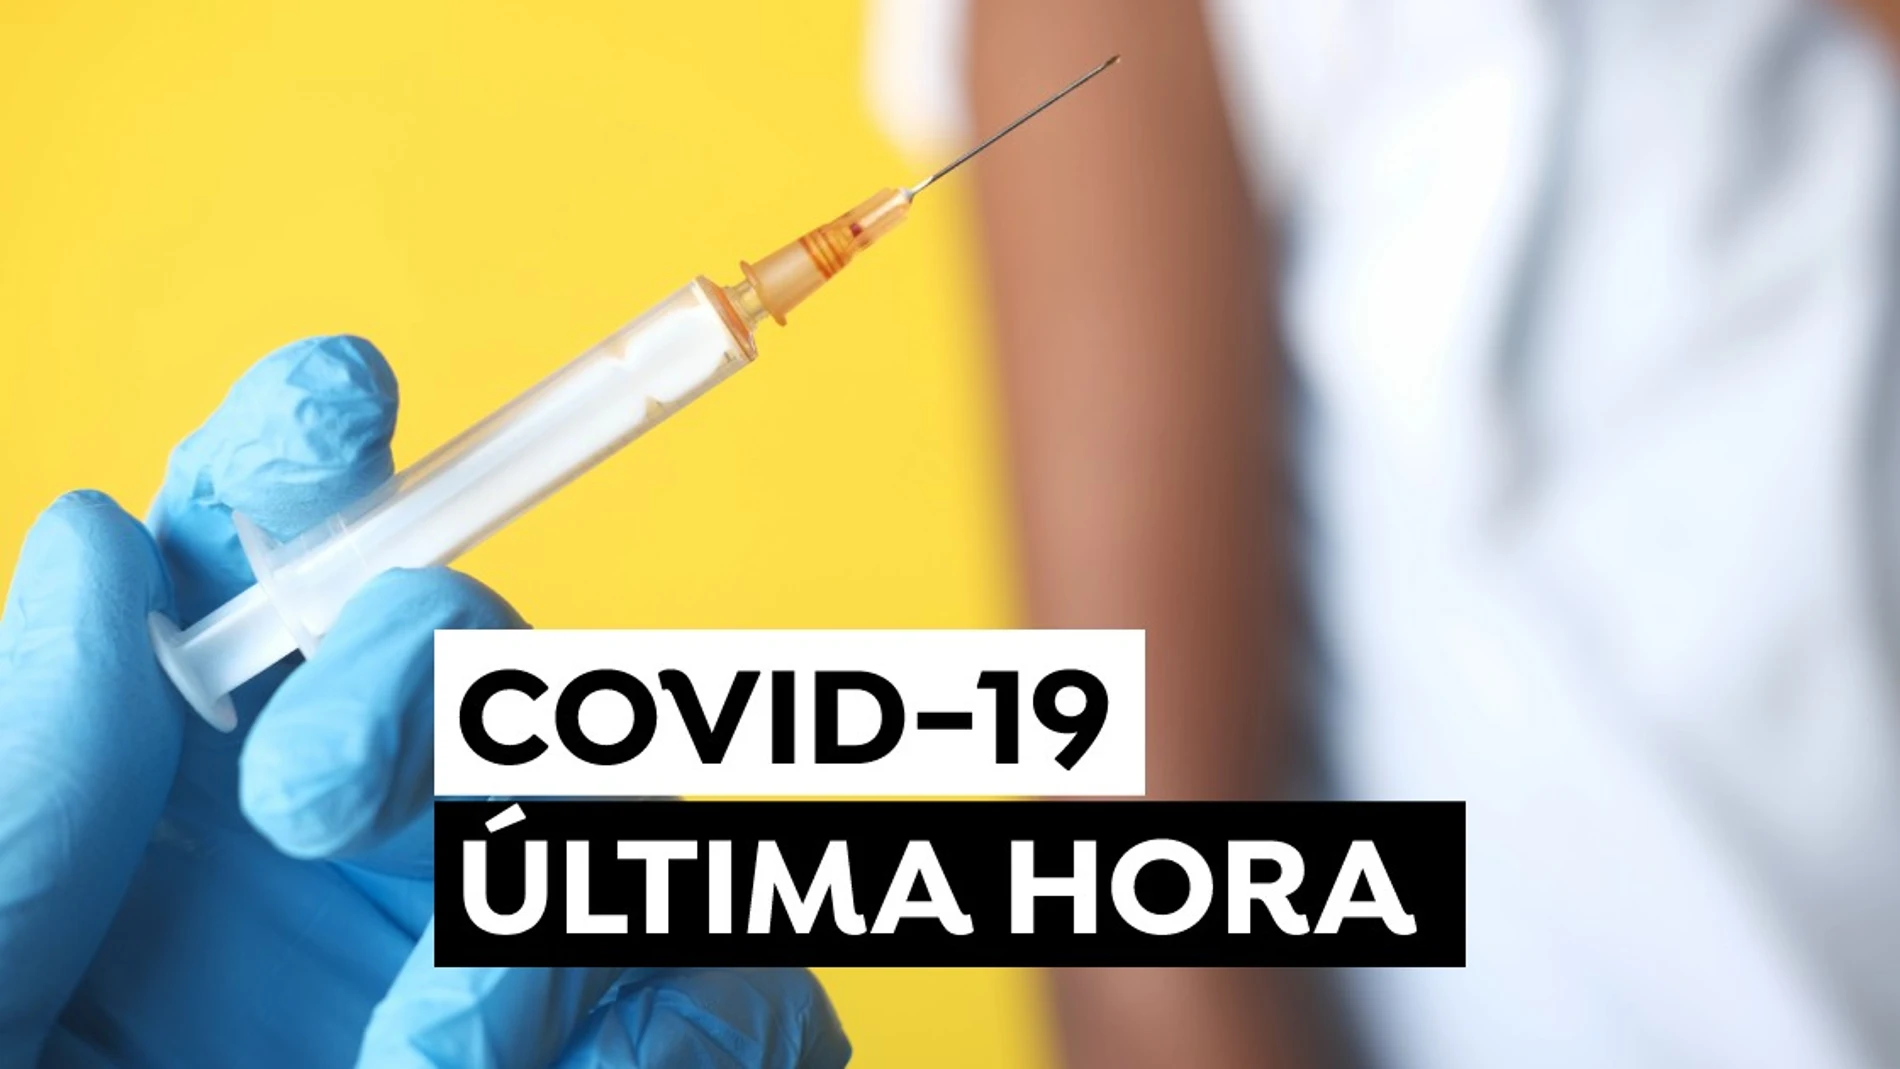 Coronavirus España: últimas noticias del COVID-19 hoy